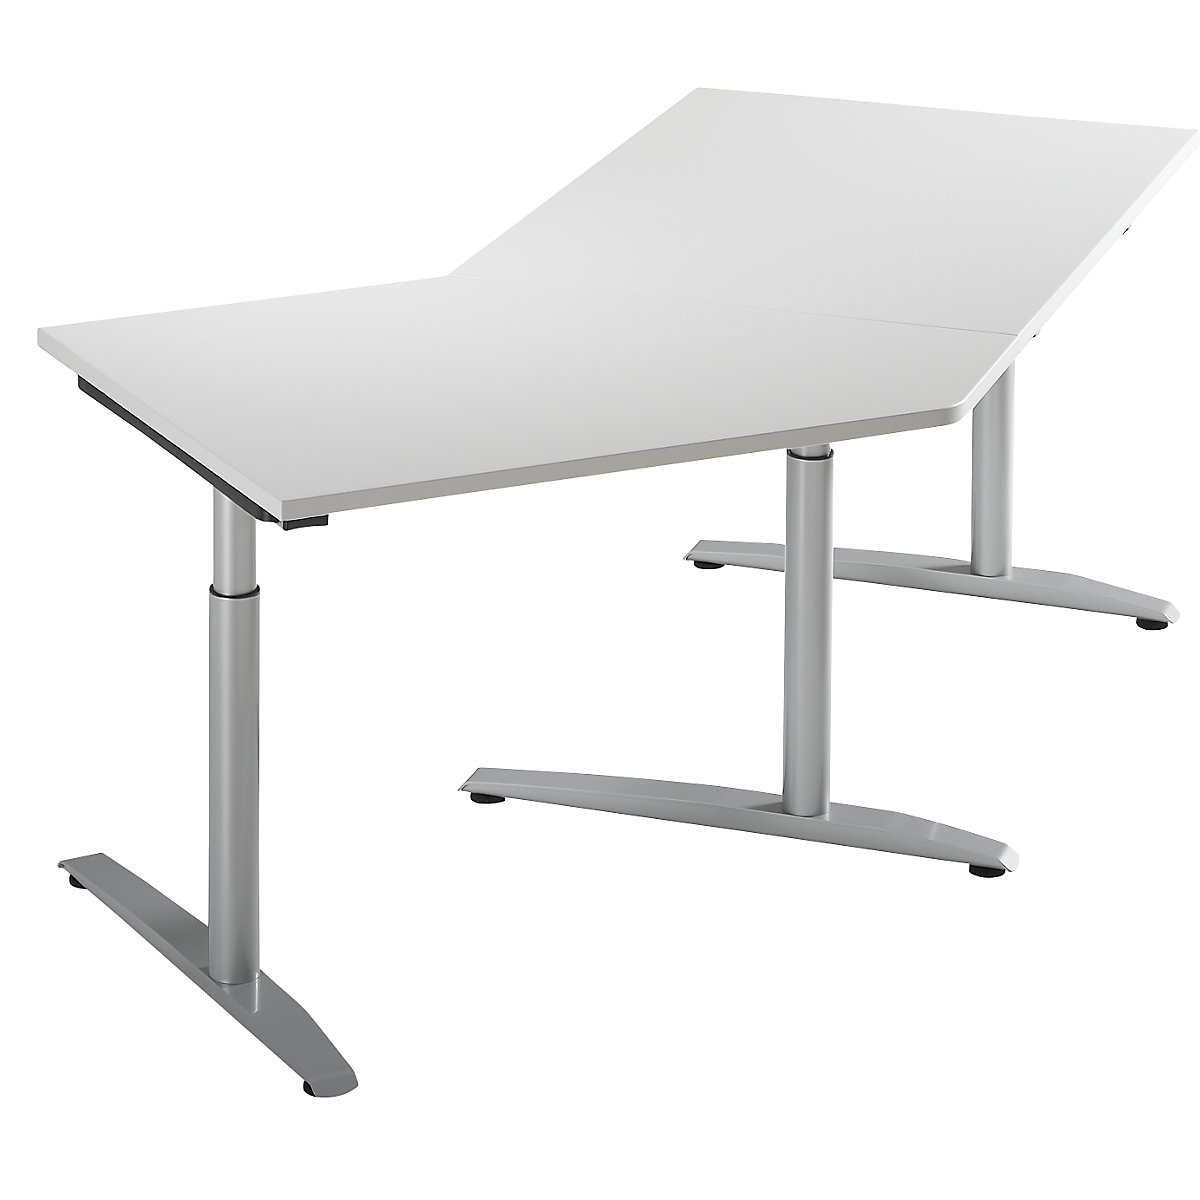 Priključni stol, namještanje visine 650 - 850 mm HANNA